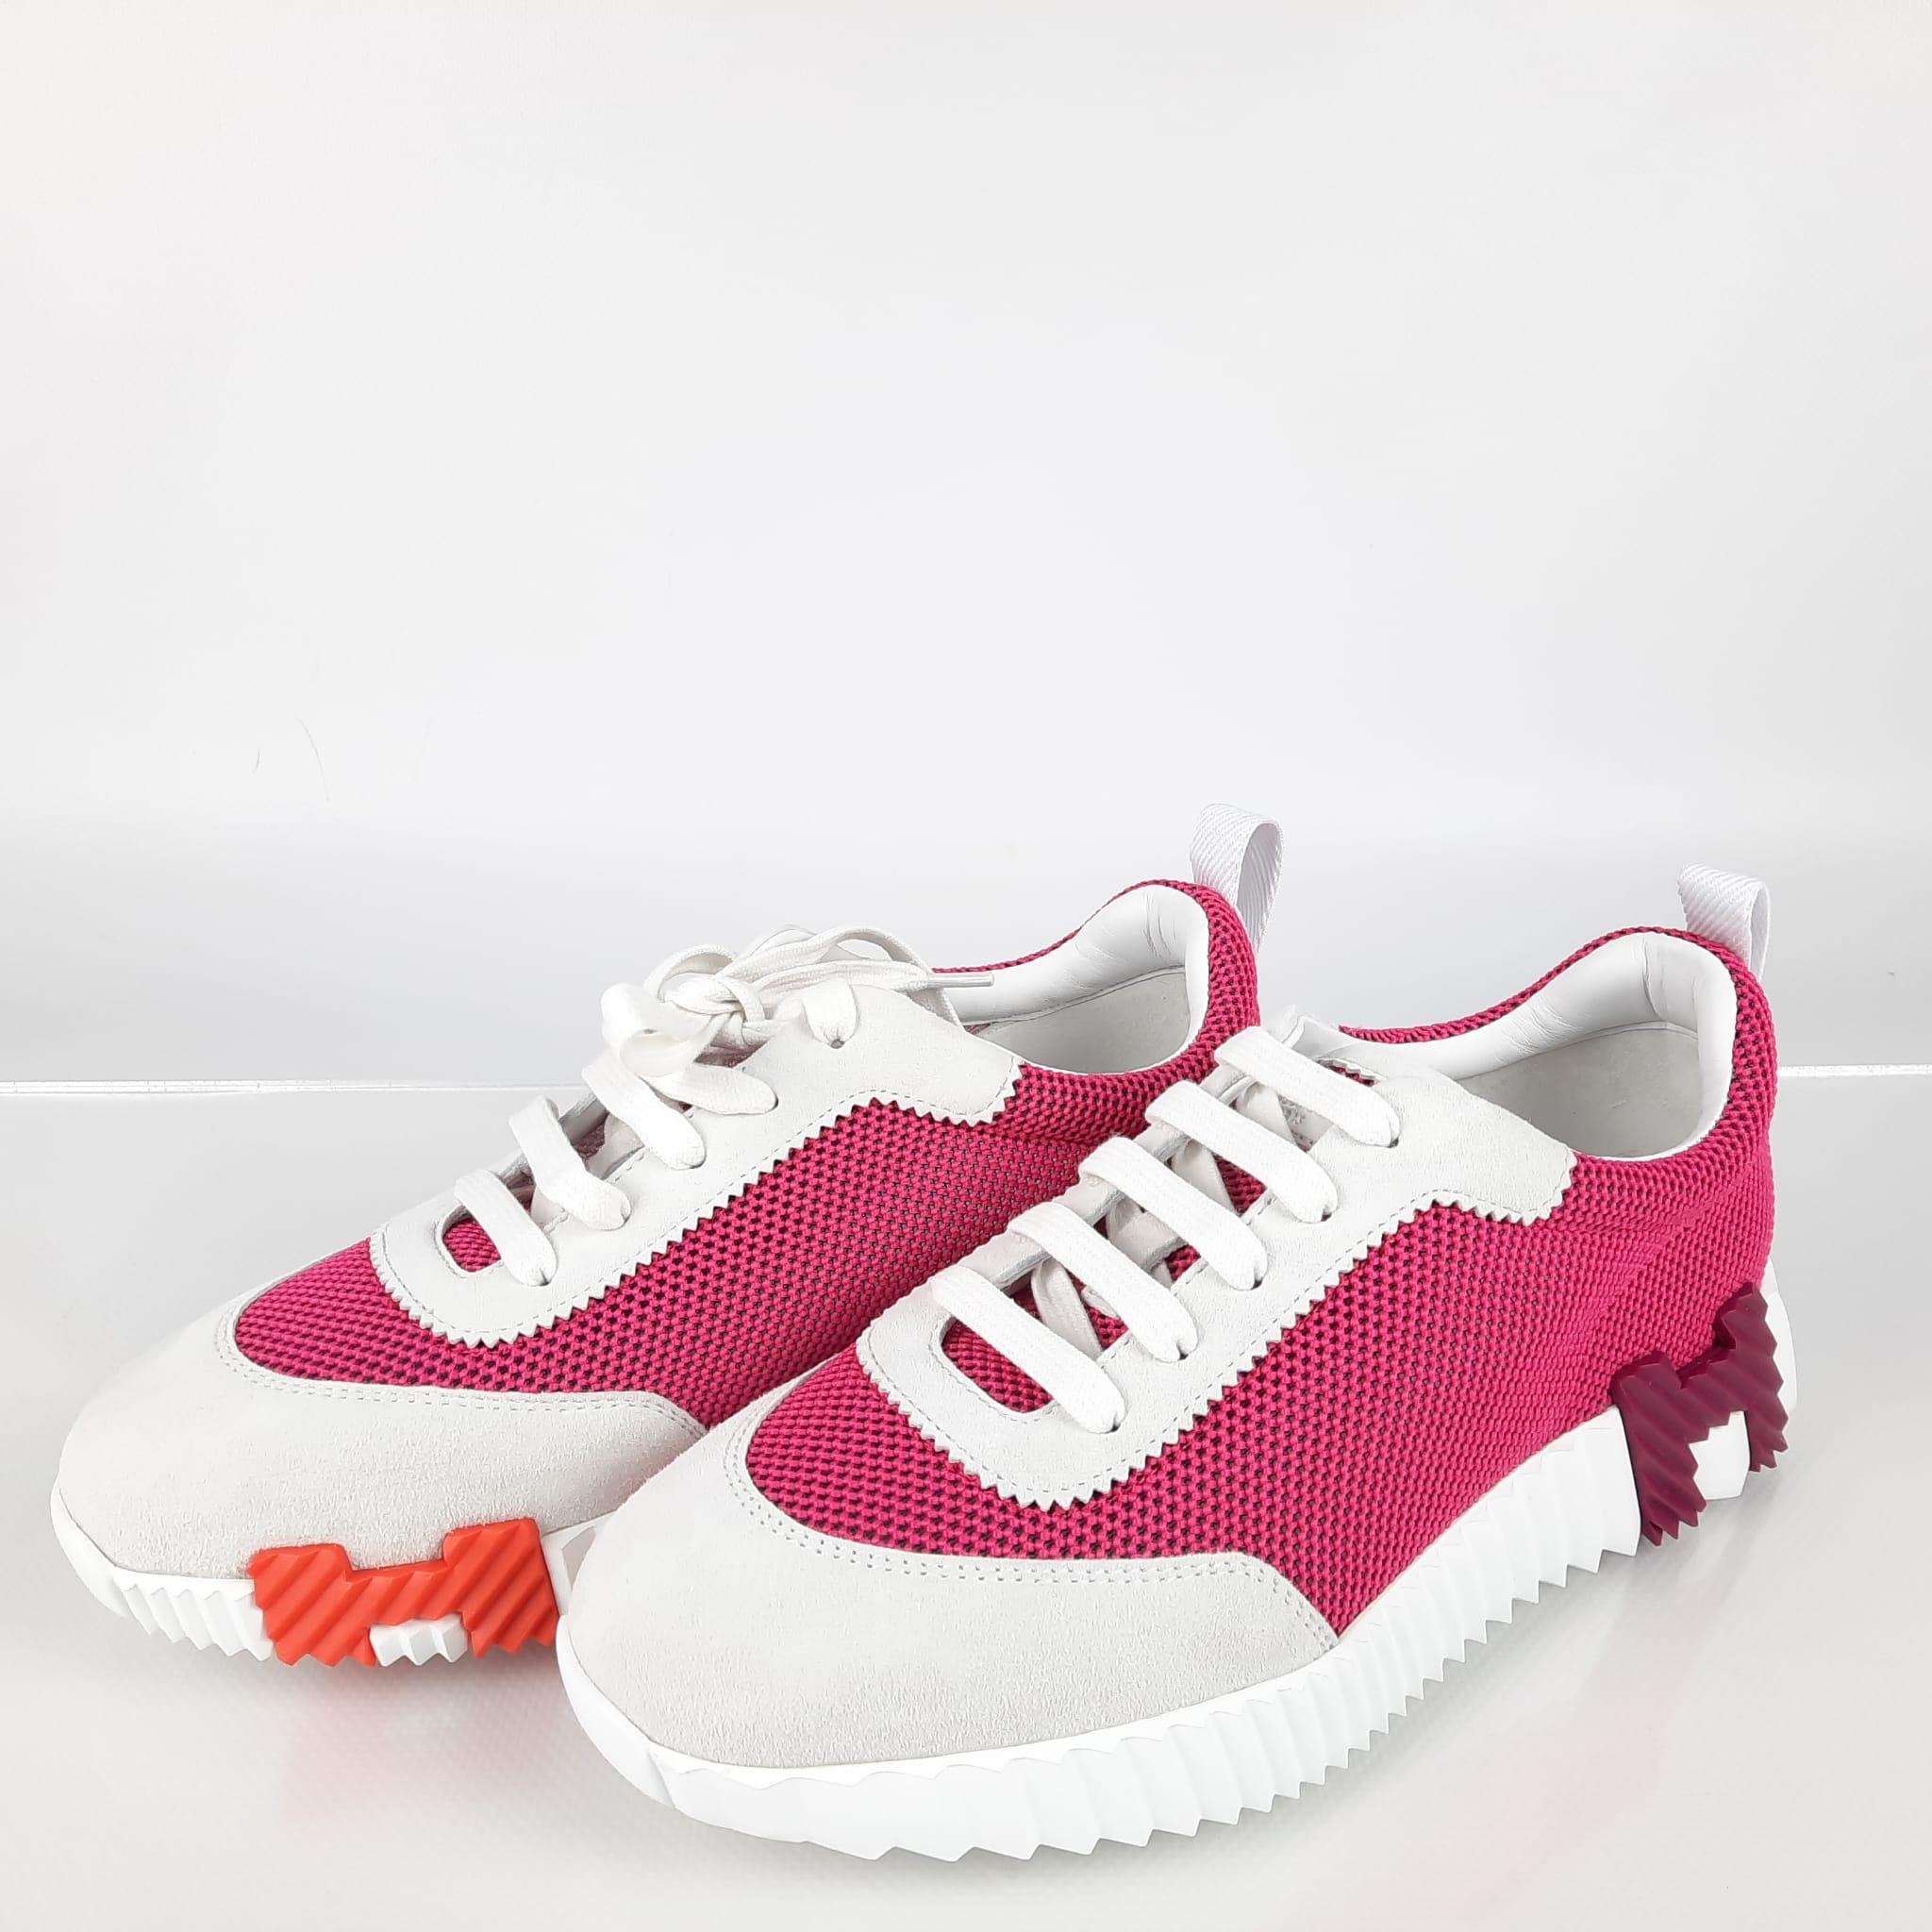 Baskets à bascule Hermès couleur Vinicunca rose/blanc, taille 39  3